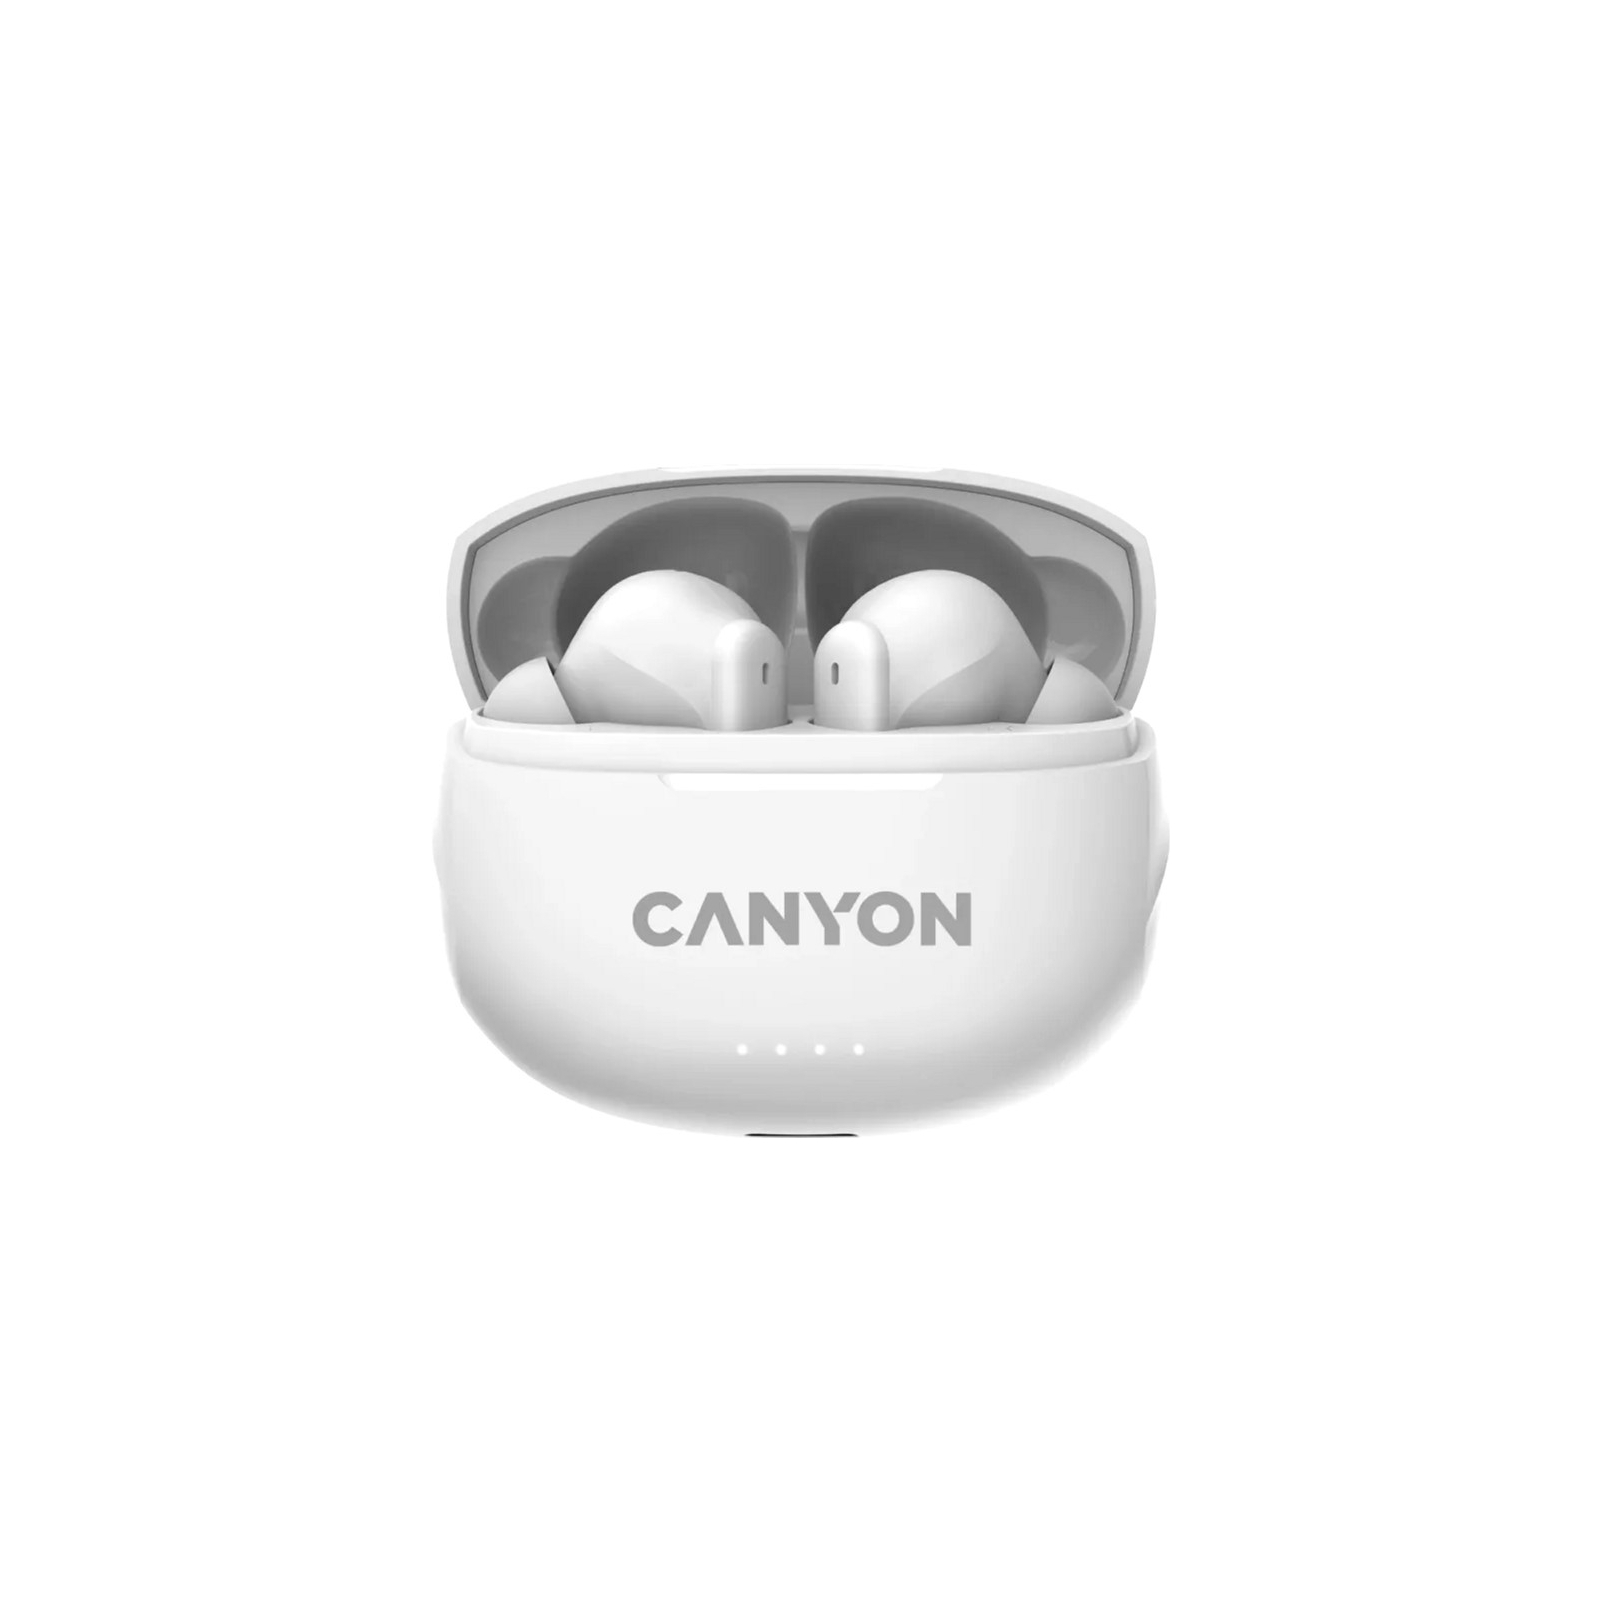 Навушники Canyon TWS-8 Black (CNS-TWS8B)